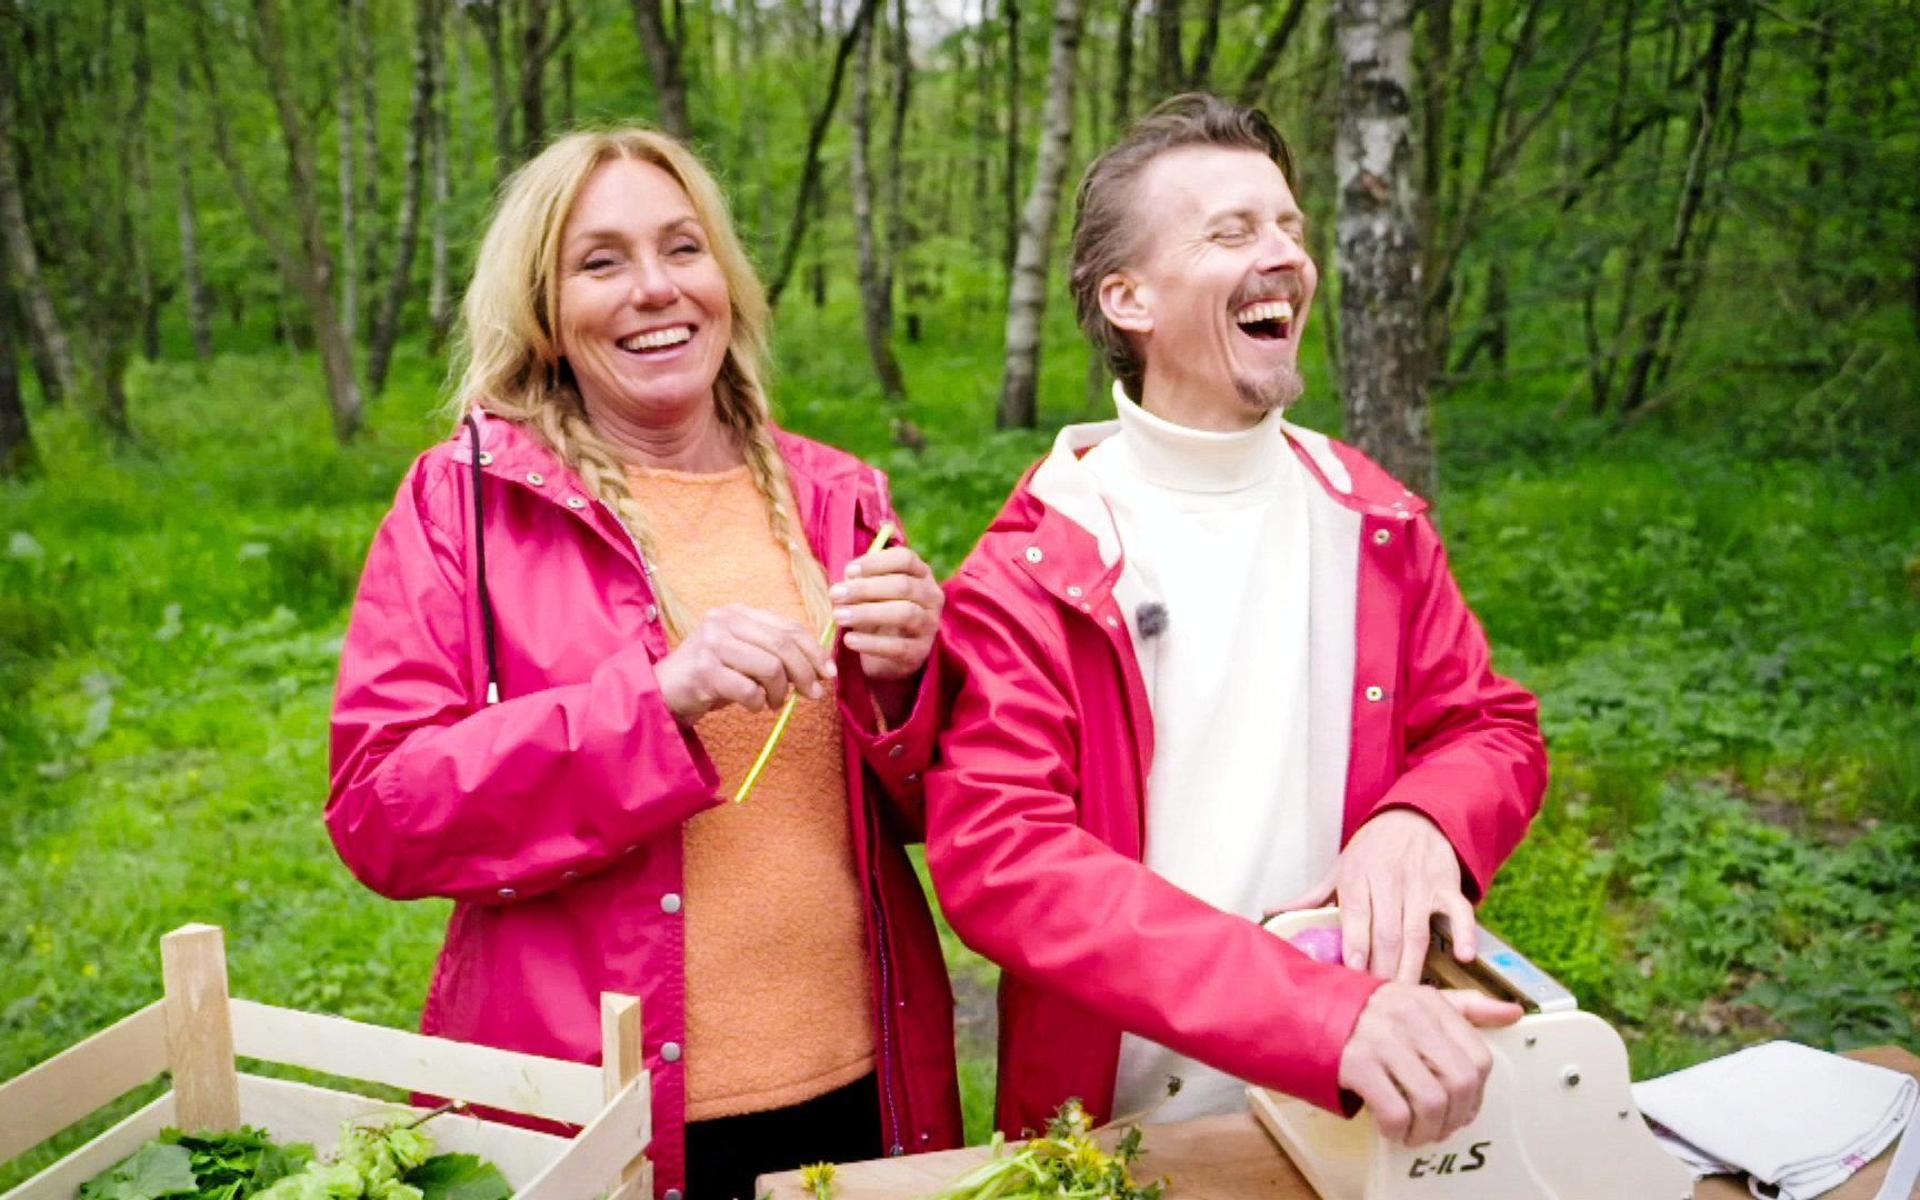 Anne Lundberg är programledare för ”Den gröne slaktaren”, där Paul Svensson i sex avsnitt ska laga till folkkära maträtter med råvaror från växtriket som sällan används.